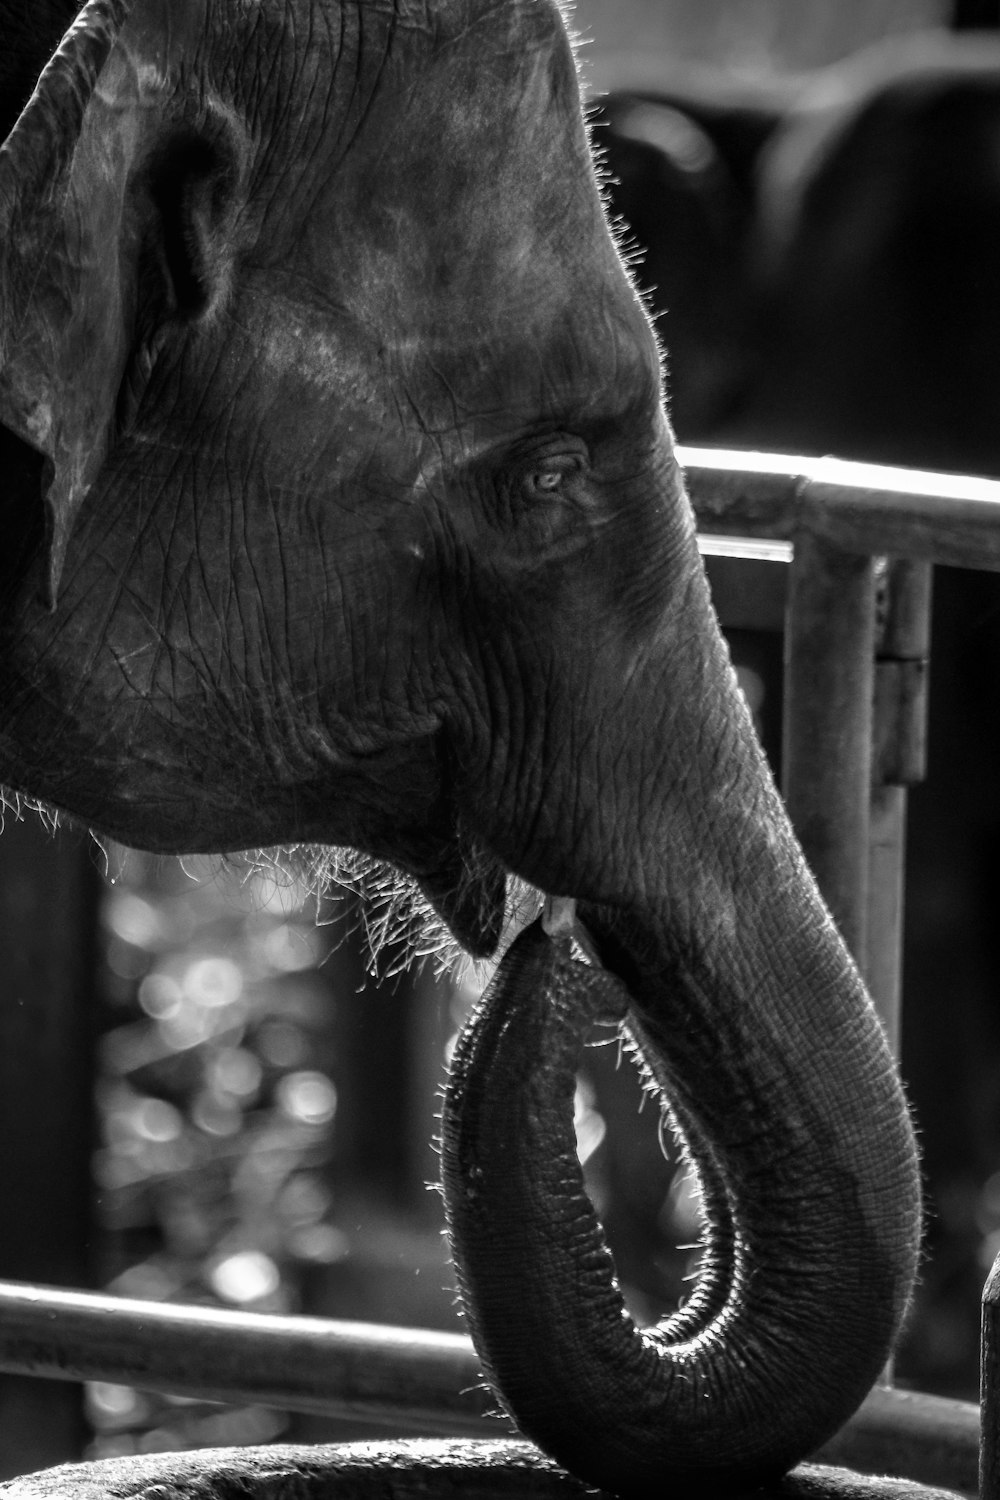 Elefant in Graustufenfotografie tagsüber